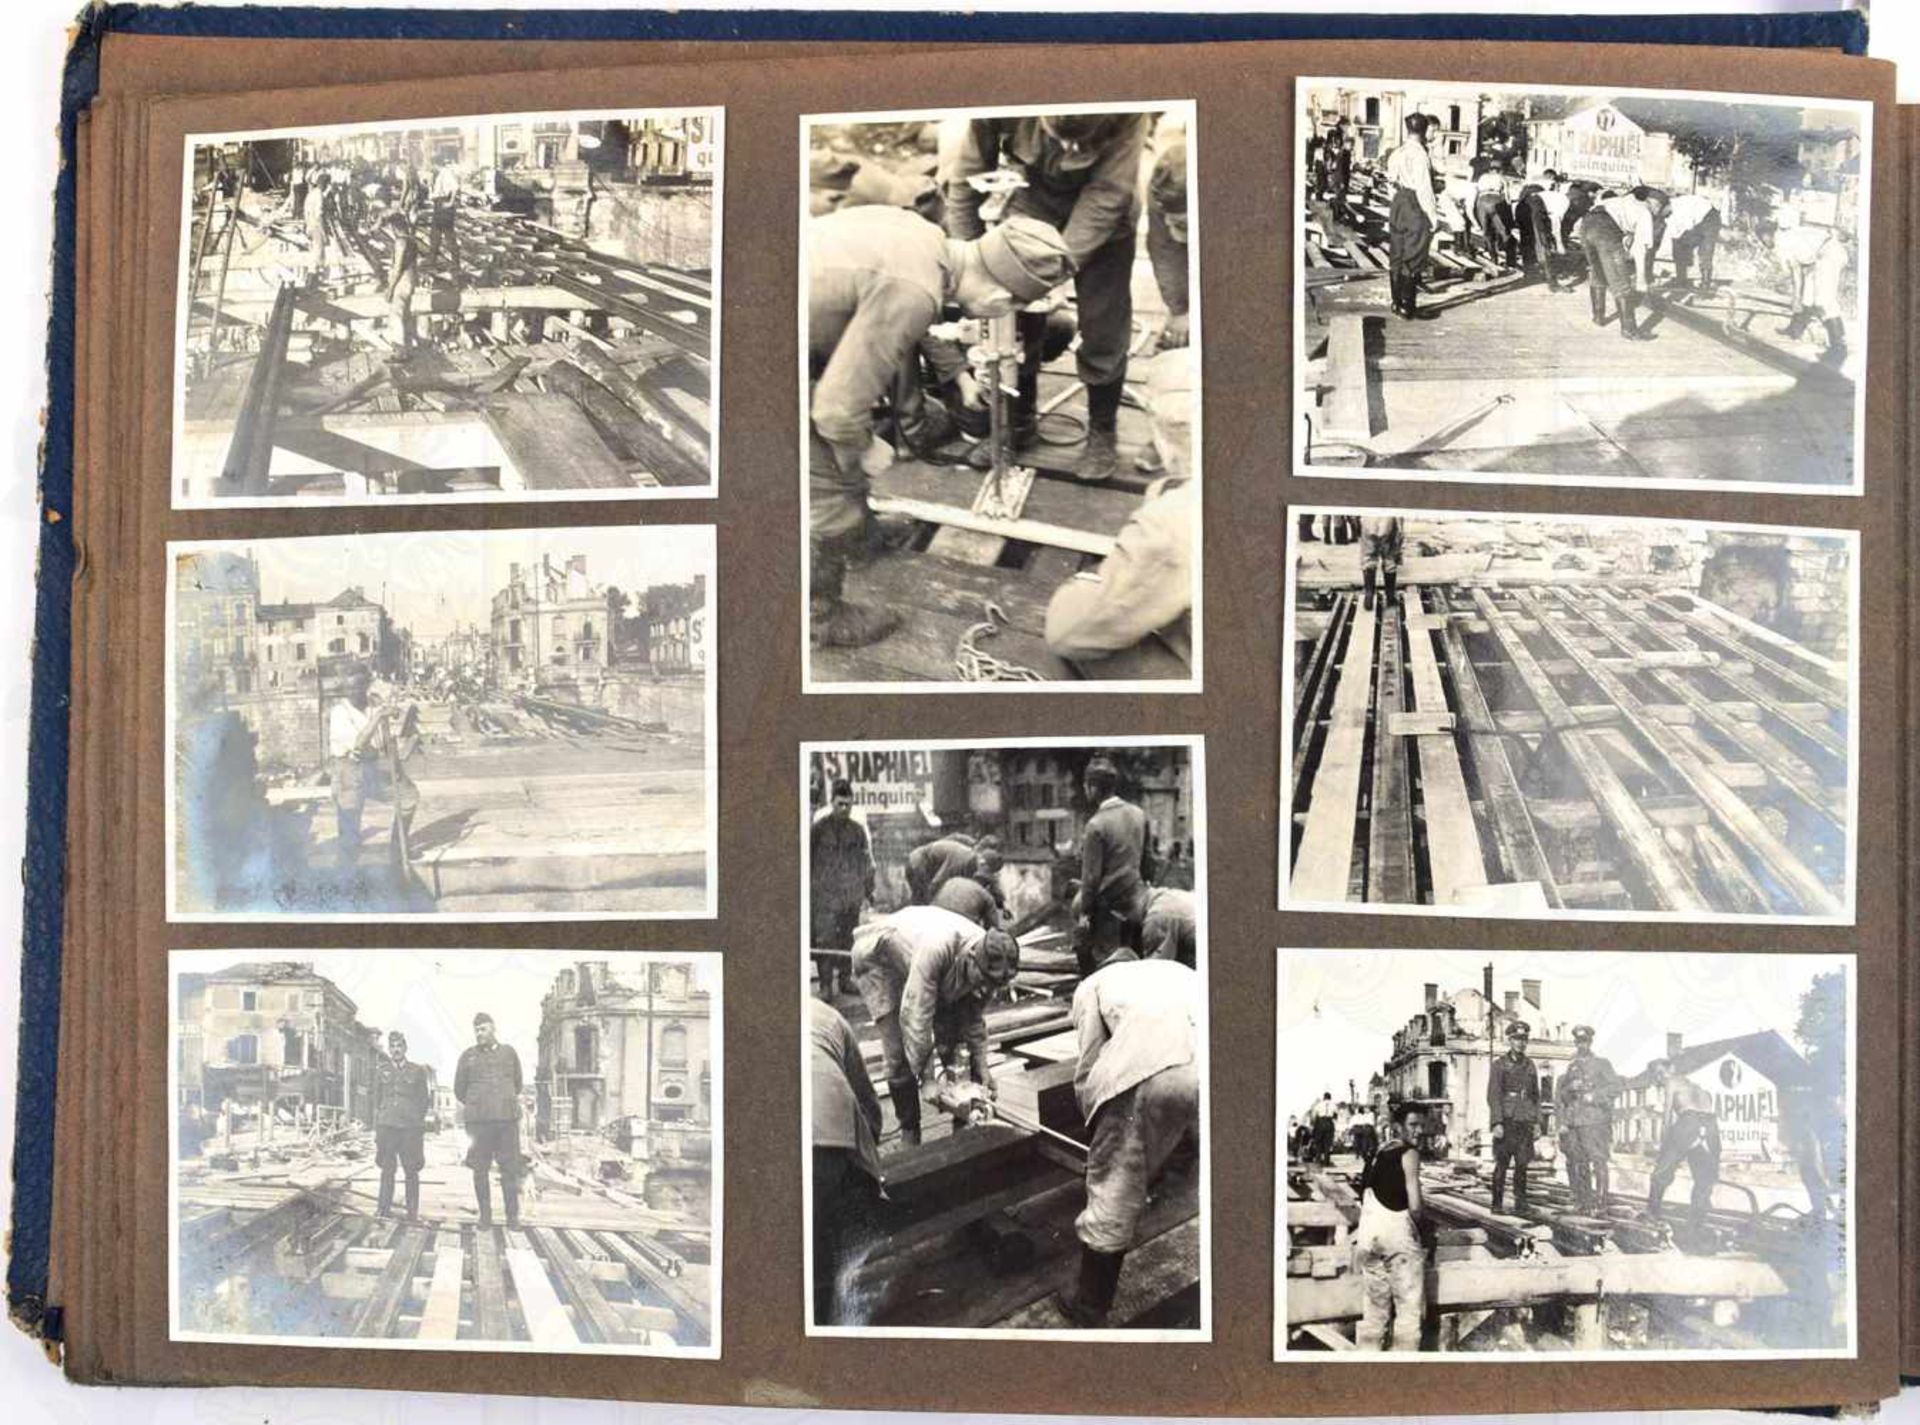 FOTOALBUM, m. 97 Fotos, meist Brückenbau in Frankreich, Abtragen zerst. Straßen- u. Bogenbrücken, - Bild 2 aus 3